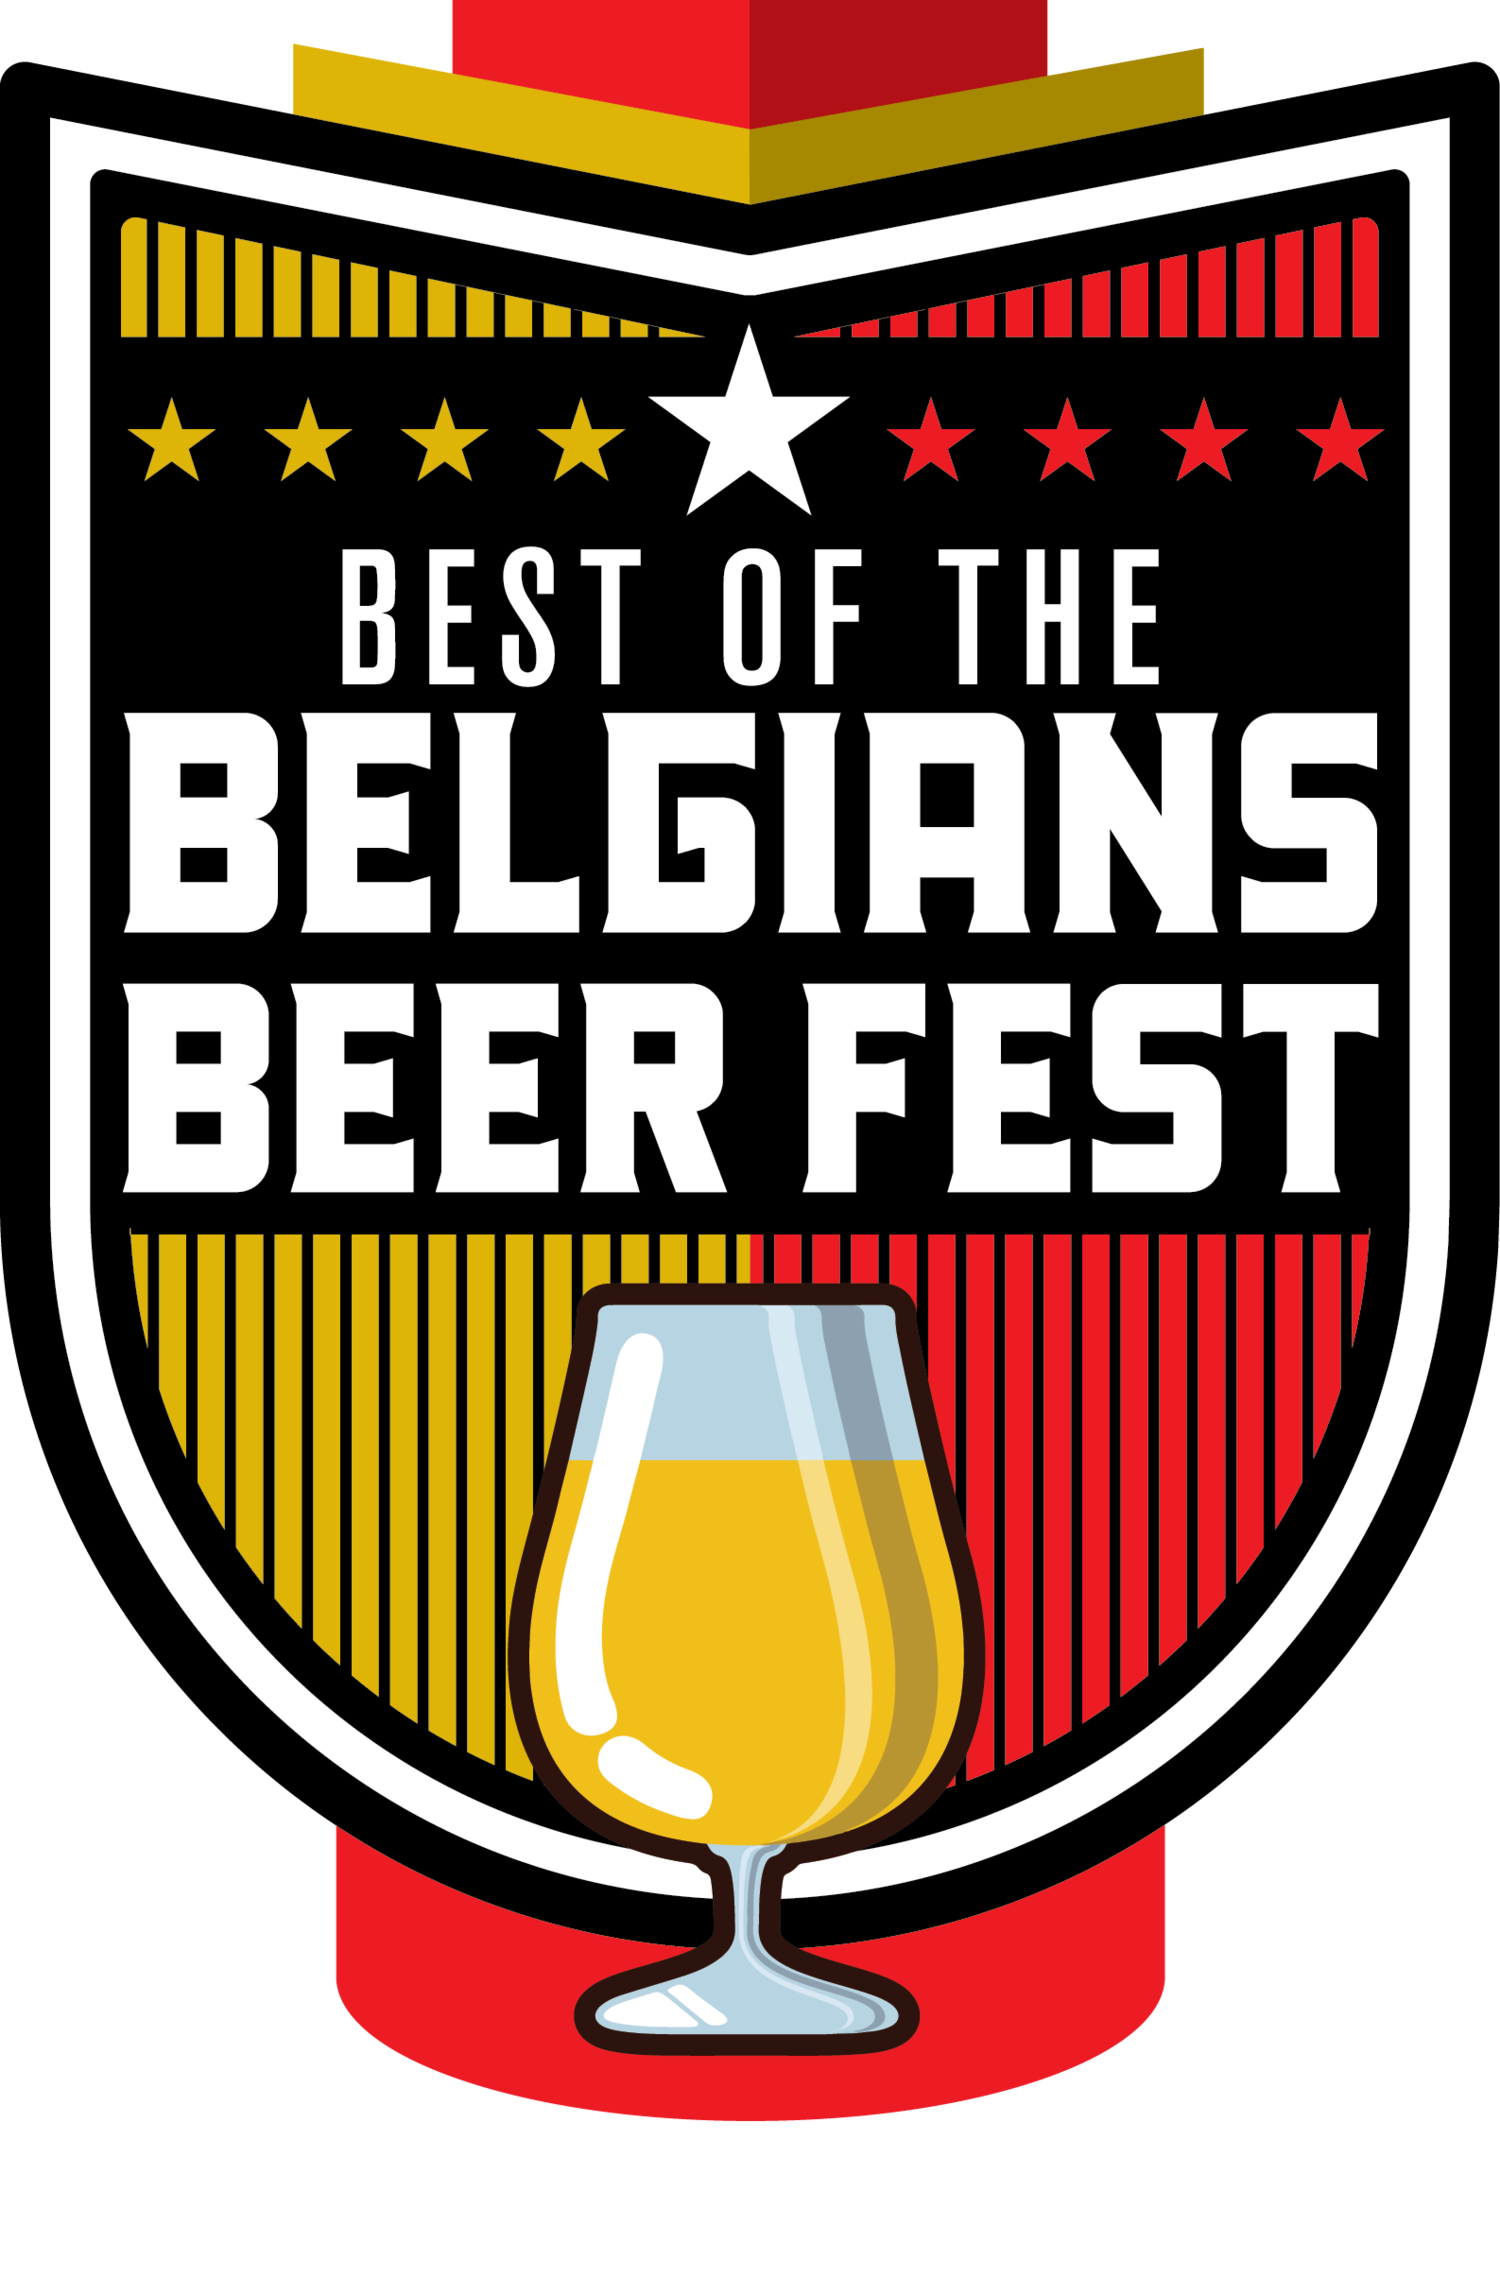 Tickets — Best of the Belgians Beer Fest